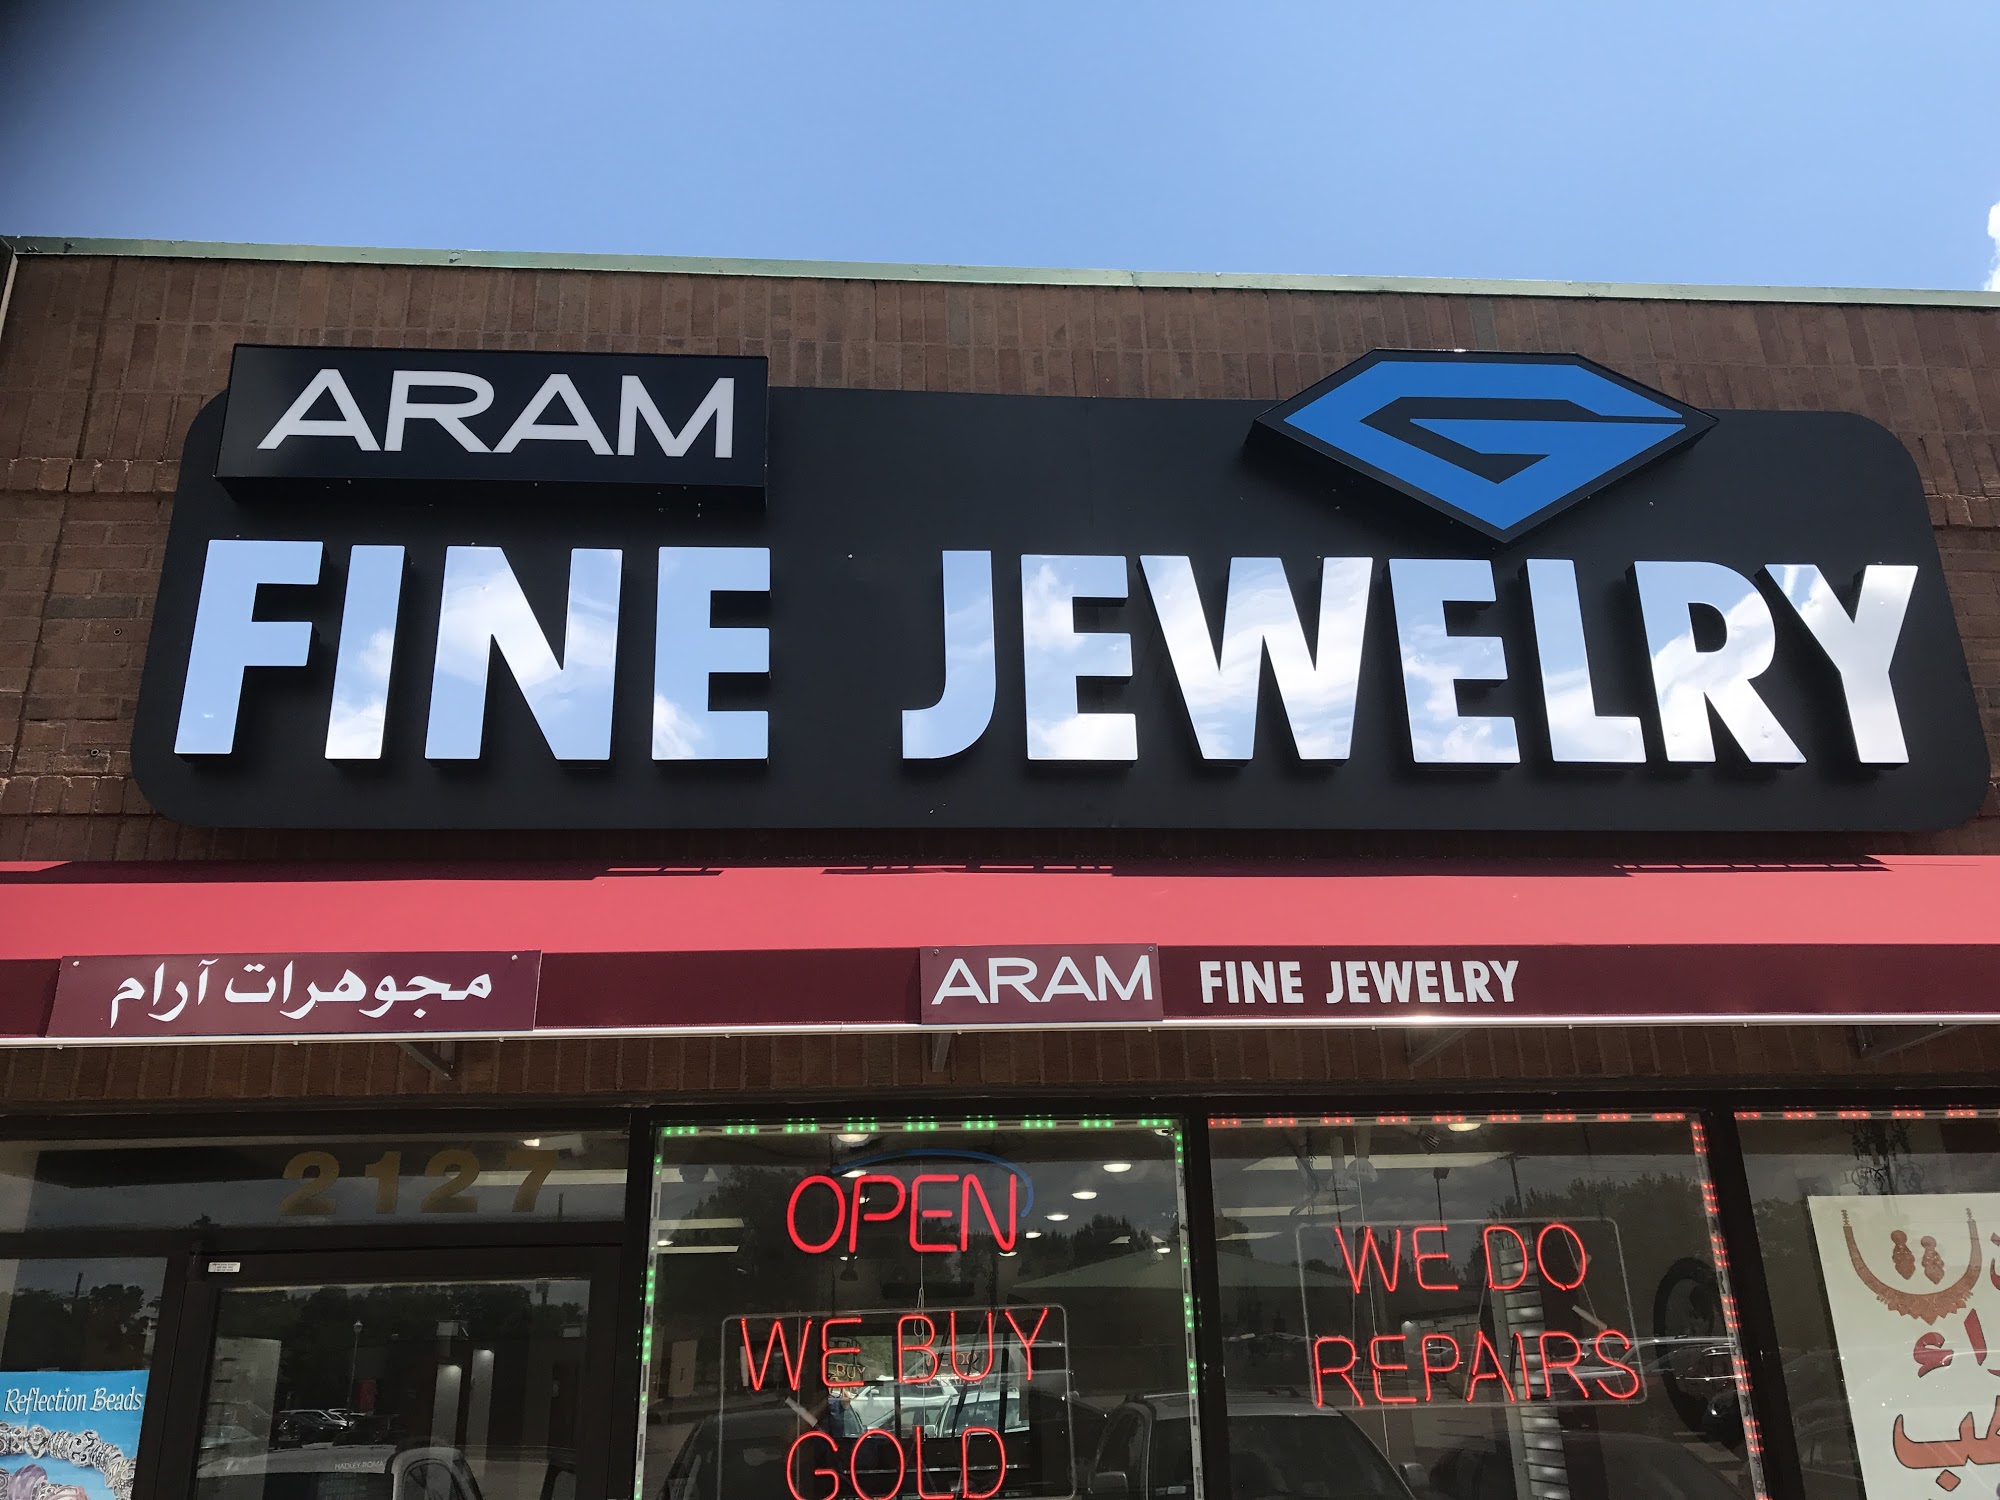 Aram fine jewelry